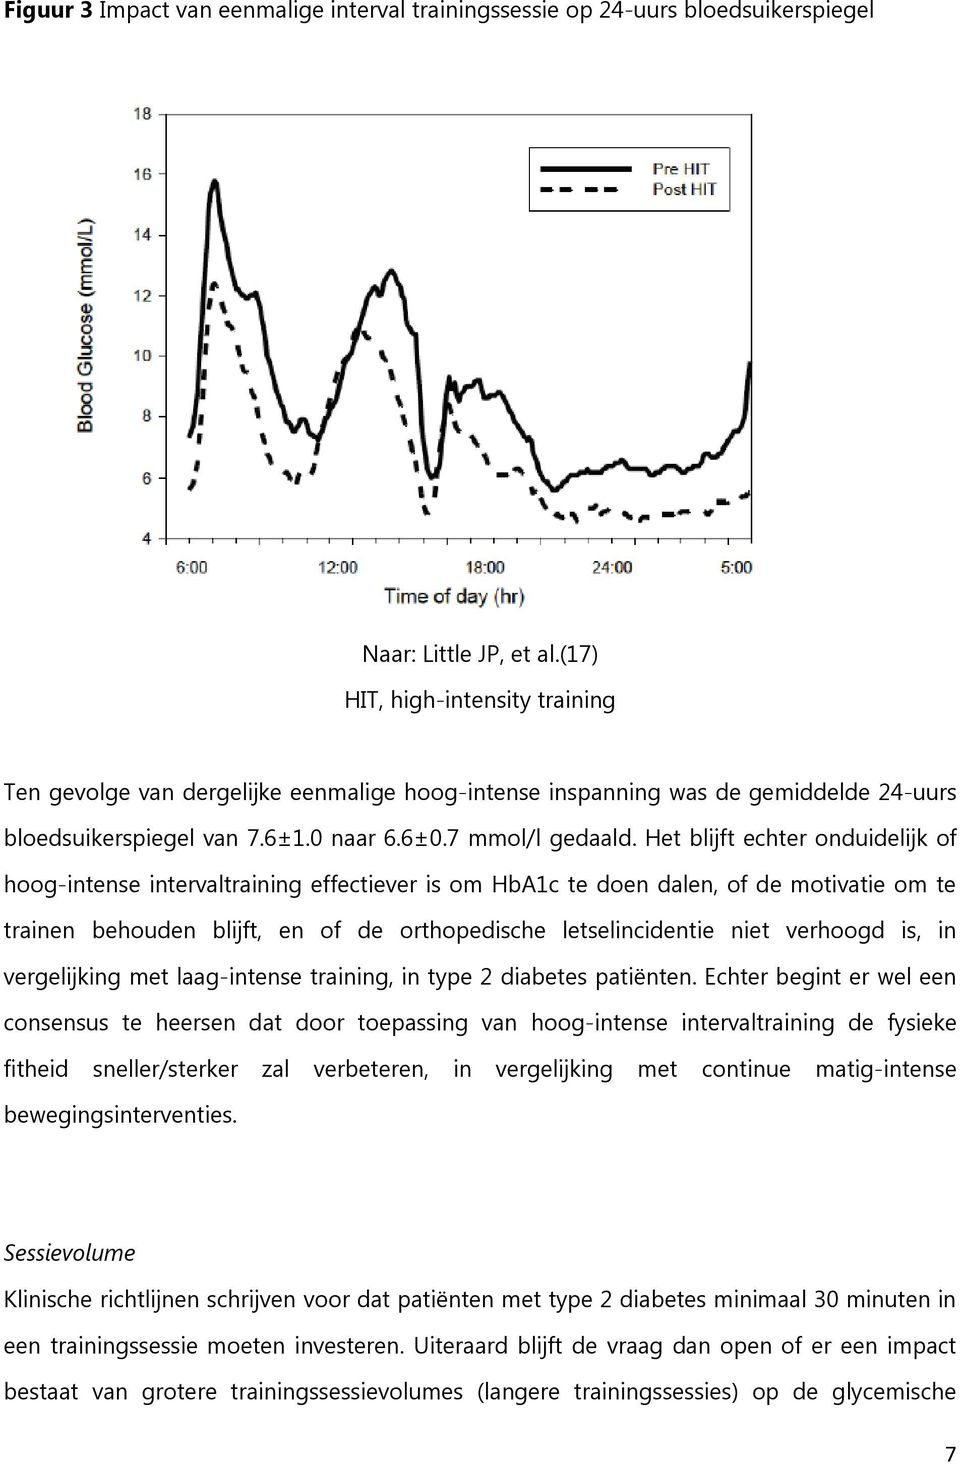 Het blijft echter onduidelijk of hoog-intense intervaltraining effectiever is om HbA1c te doen dalen, of de motivatie om te trainen behouden blijft, en of de orthopedische letselincidentie niet